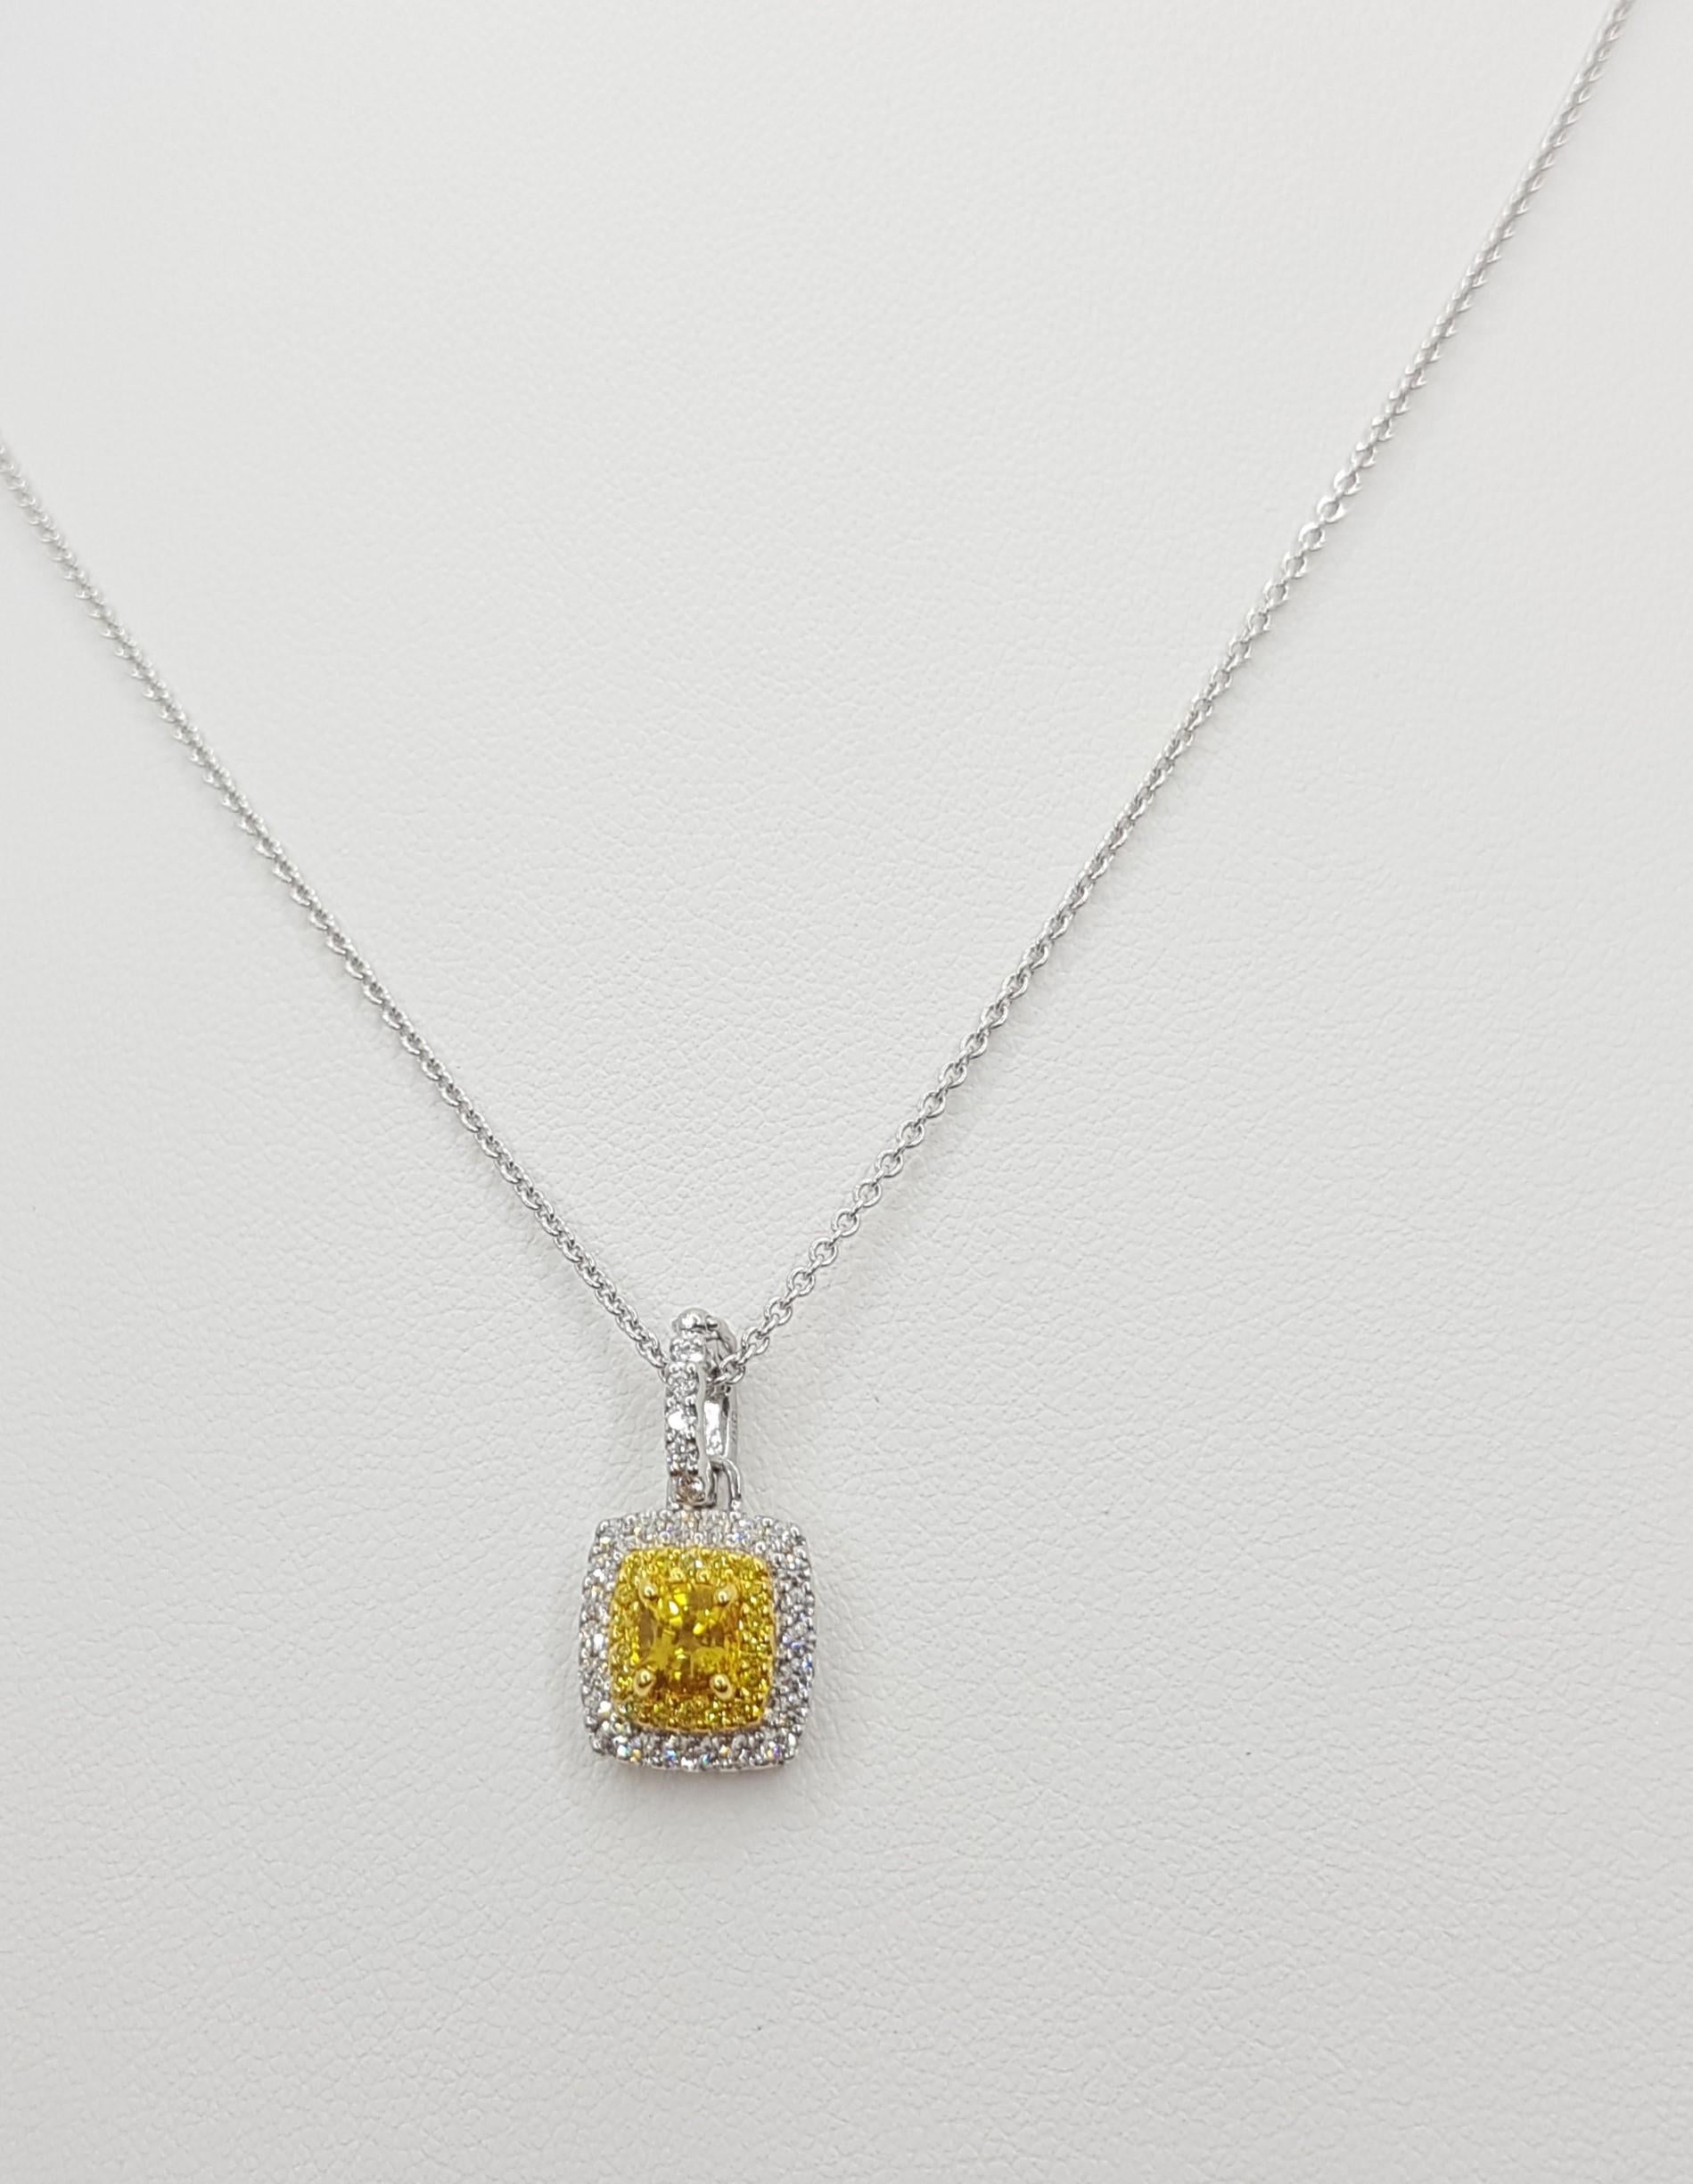 Gelber Saphir 0,60 Karat mit Diamant 0,28 Karat und gelber Diamant 0,09 Karat Anhänger in 18 Karat Weißgoldfassung
(Kette nicht enthalten)

Breite: 1,0 cm 
Länge: 1,9 cm
Gesamtgewicht: 2,58 Gramm

